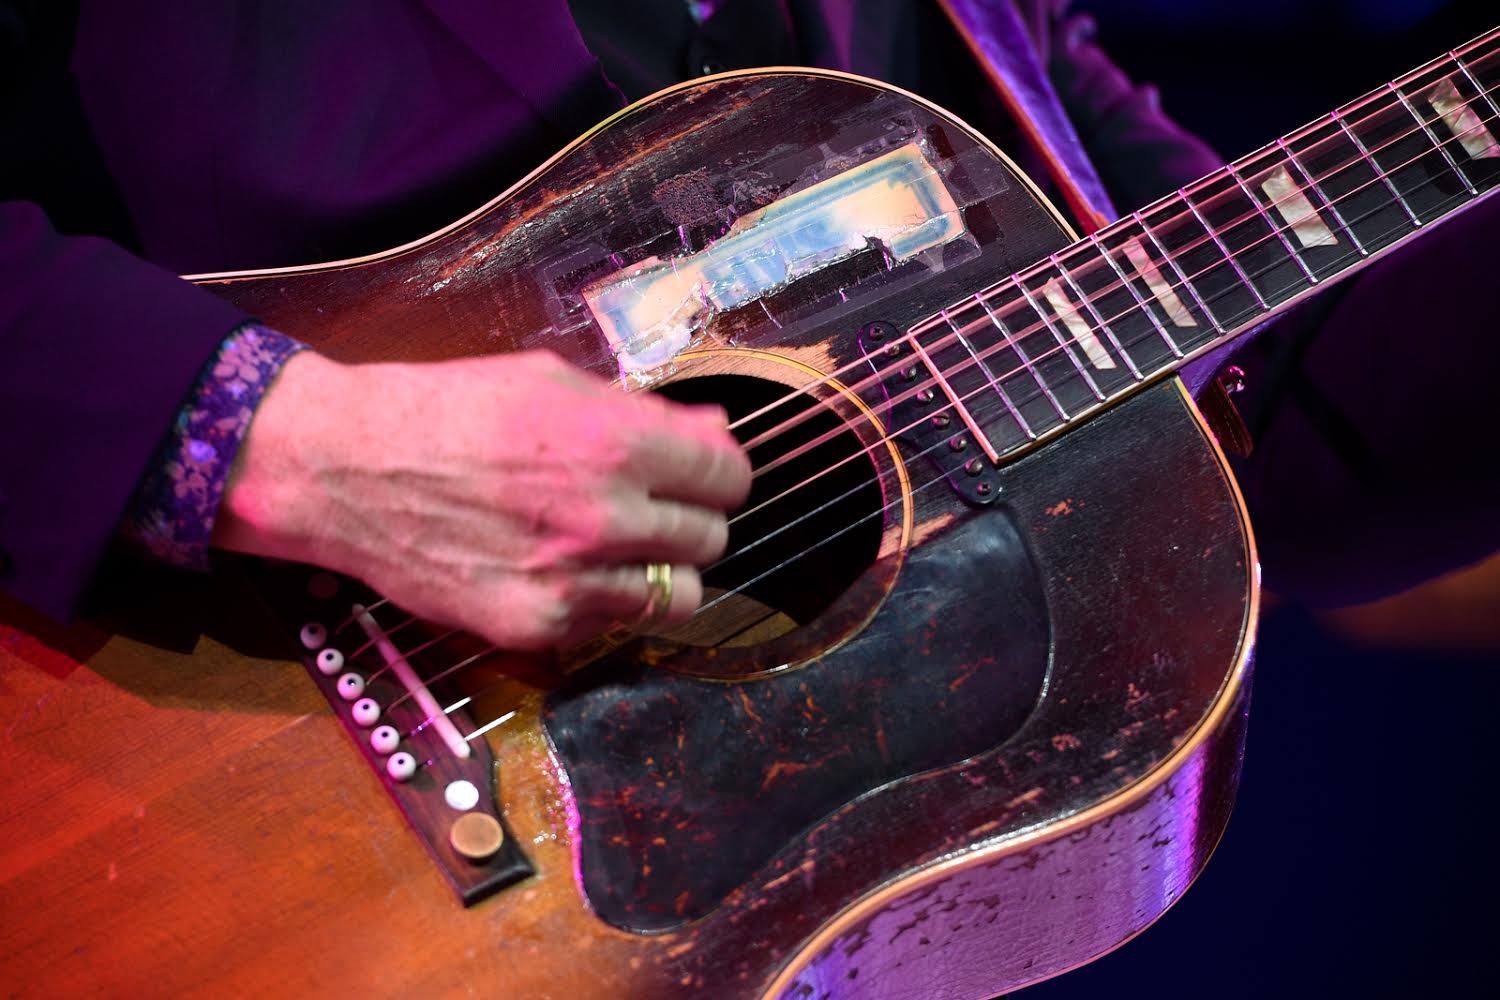 Kein feinsinniges Gezupfe: Die Gitarre zeigt, dass Elvis Costello seine Songs gern auch mal roh raushaut.